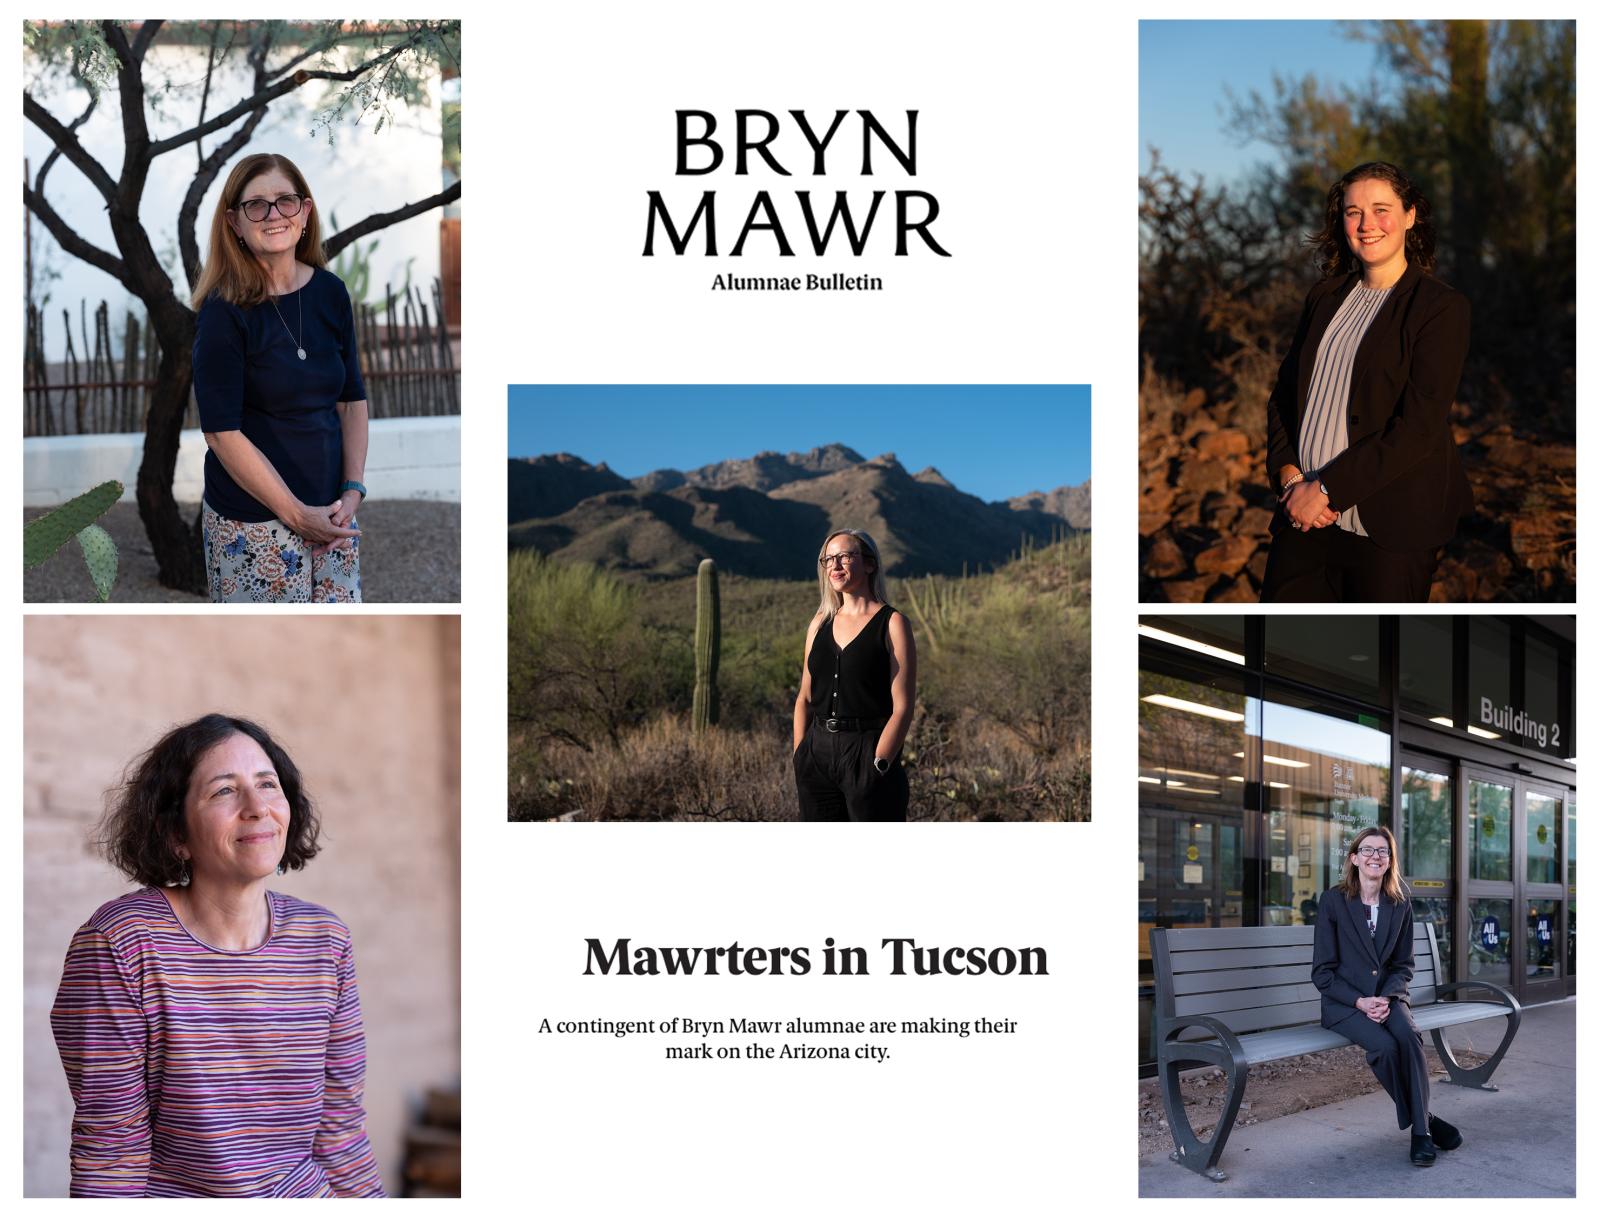 "Mawrters in Tucson" for Bryn Mawr Alumnae Bulletin